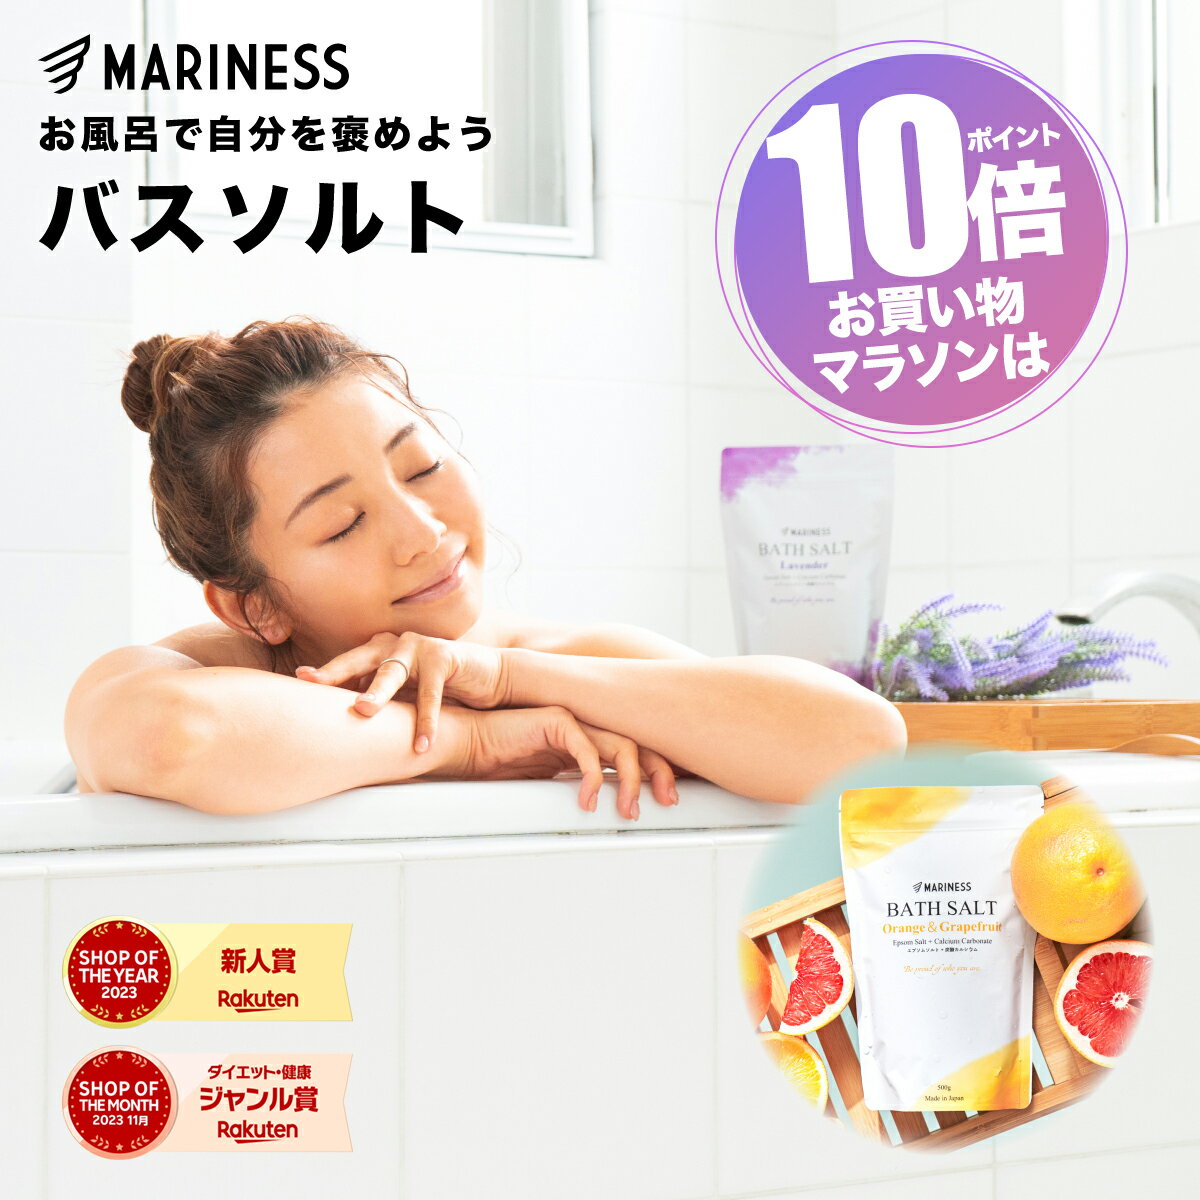 [ポイント10倍キャンペーン] マリネス バスソルト 500g エプソムソルト 国産 日本製 高級 粉末 入浴剤 送料無料 硫酸…